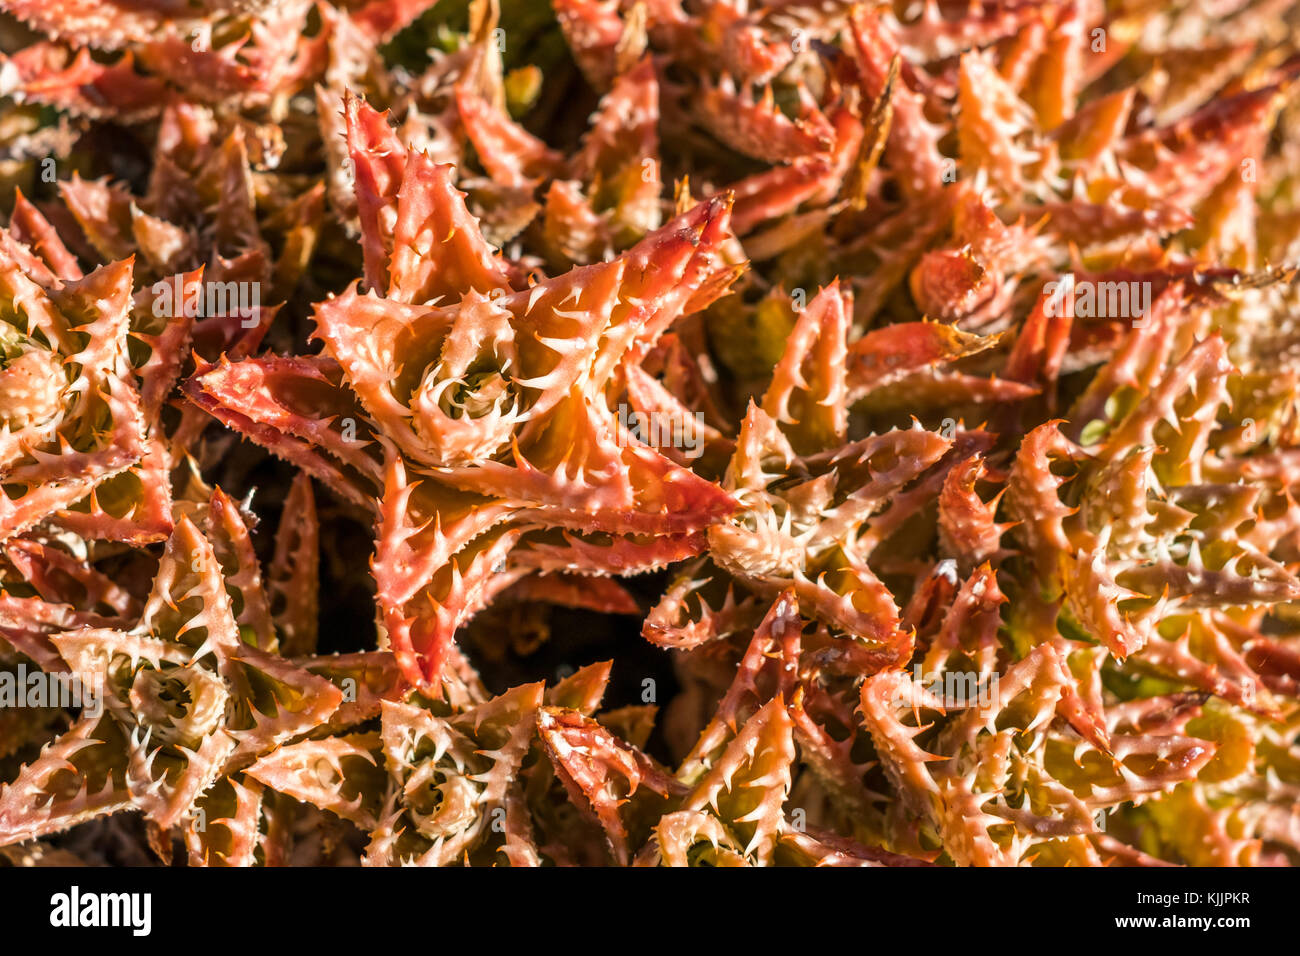 red cactus macro, succulent plant closeup Stock Photo